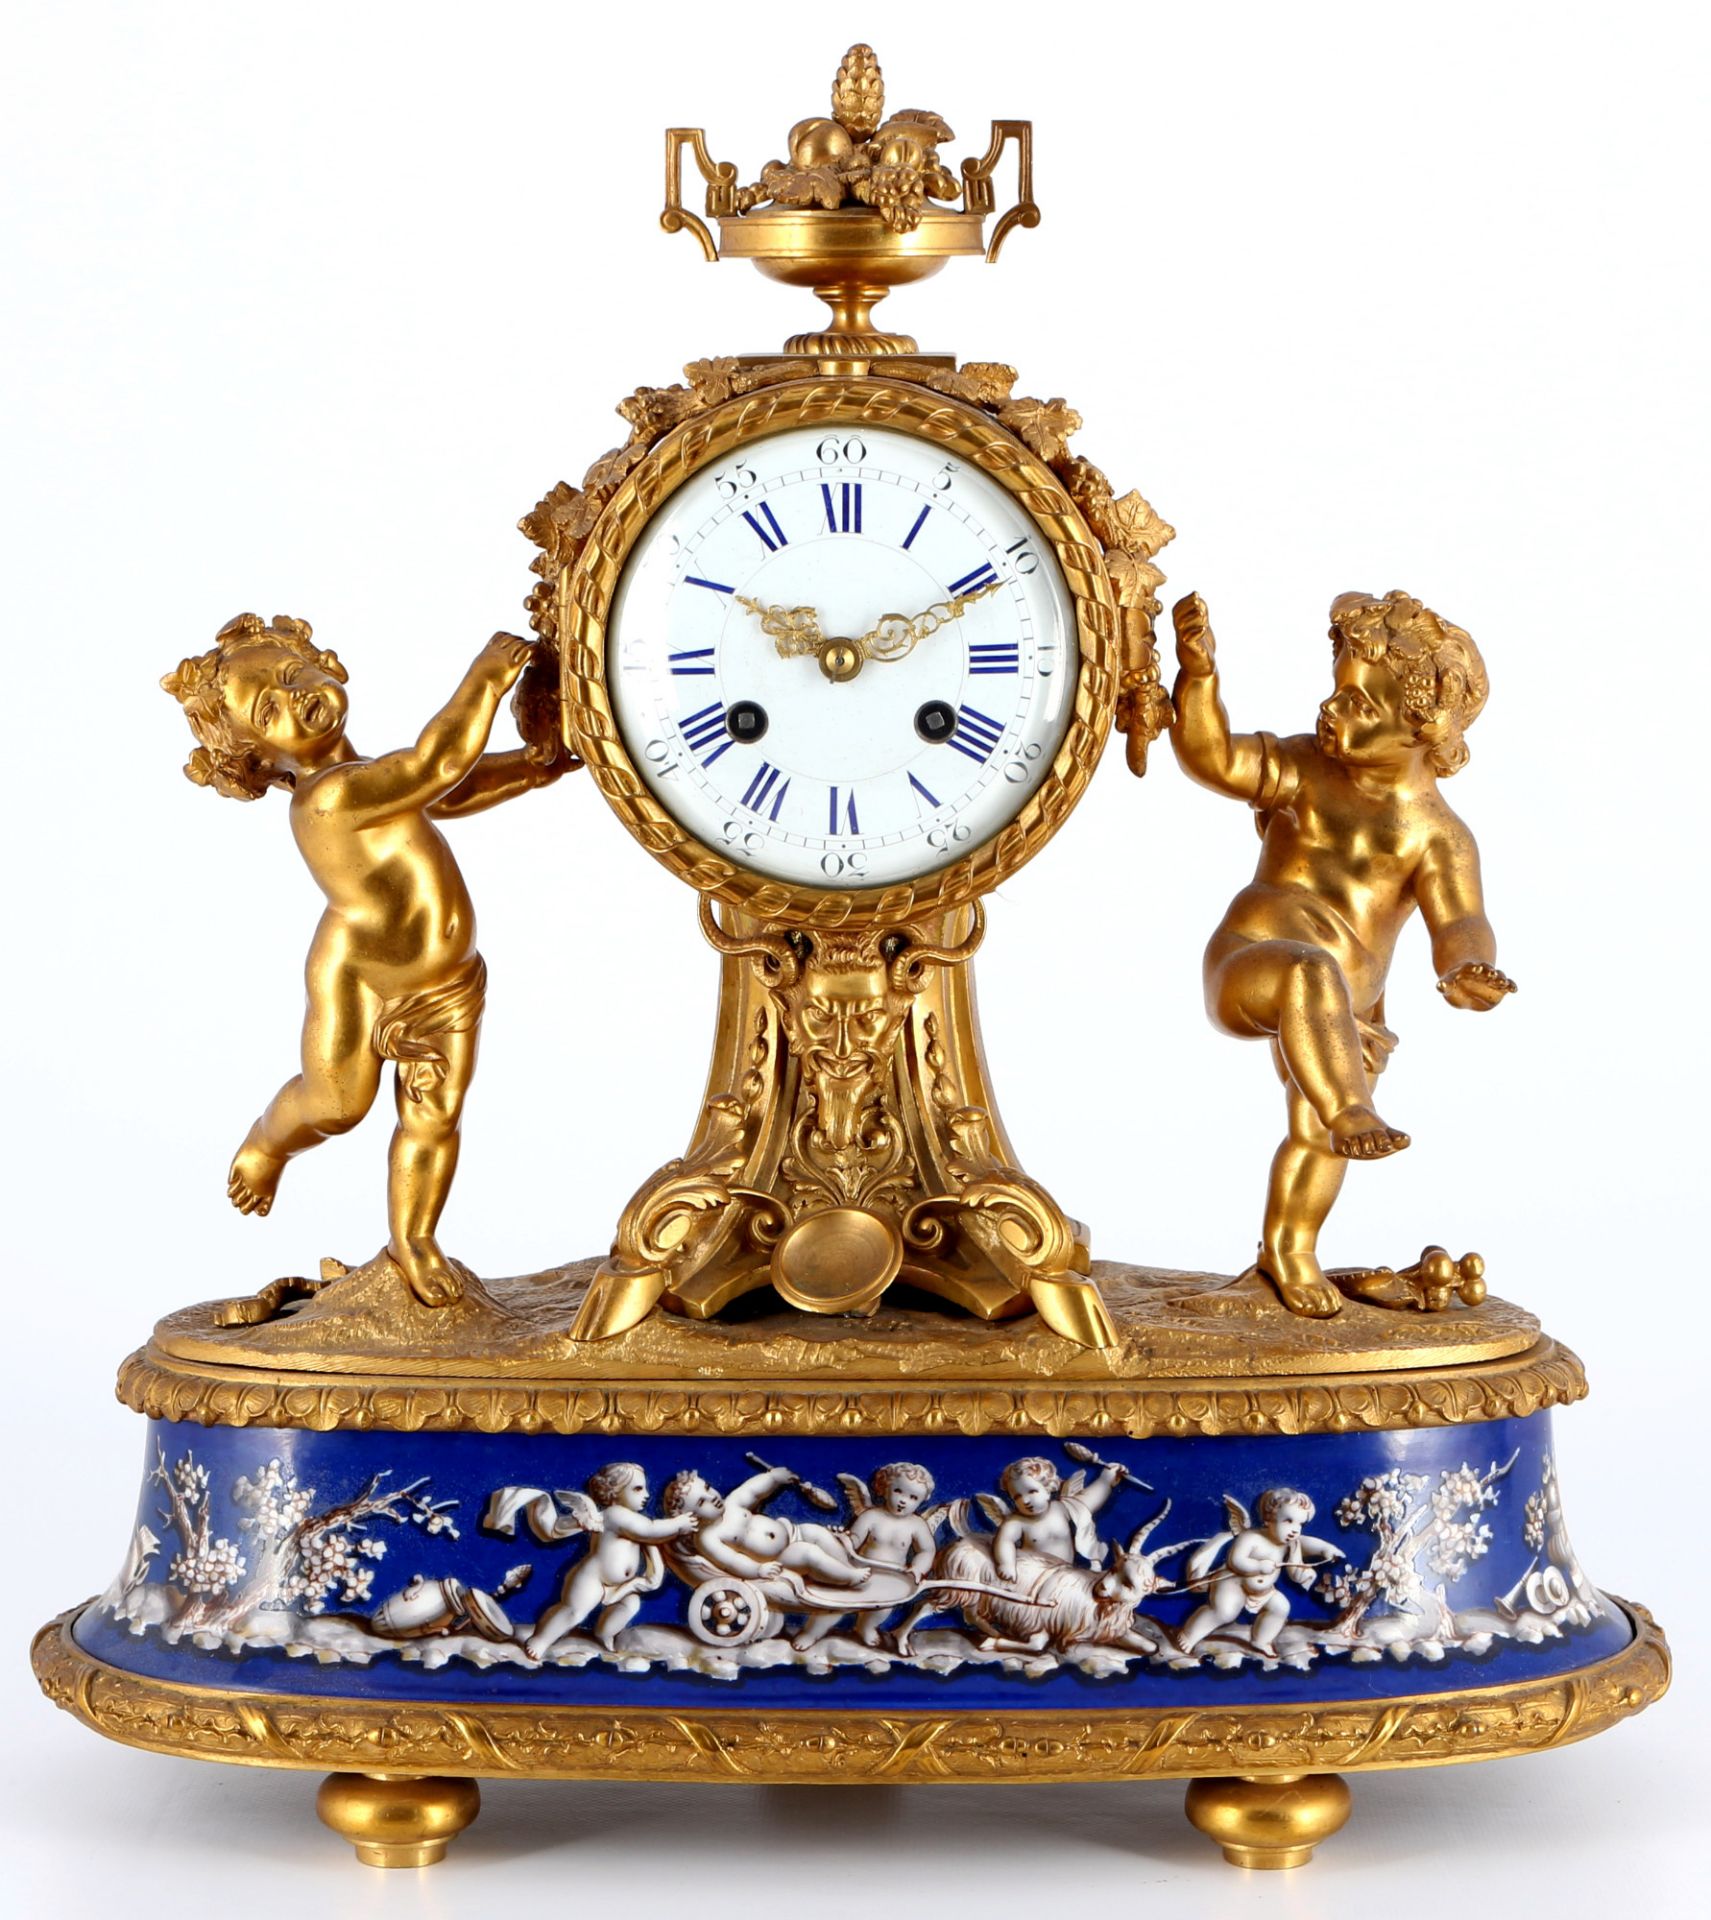 Bronze Kaminuhr, Frankreich 19. Jahrhundert, bronze french mantel clock 19th century,